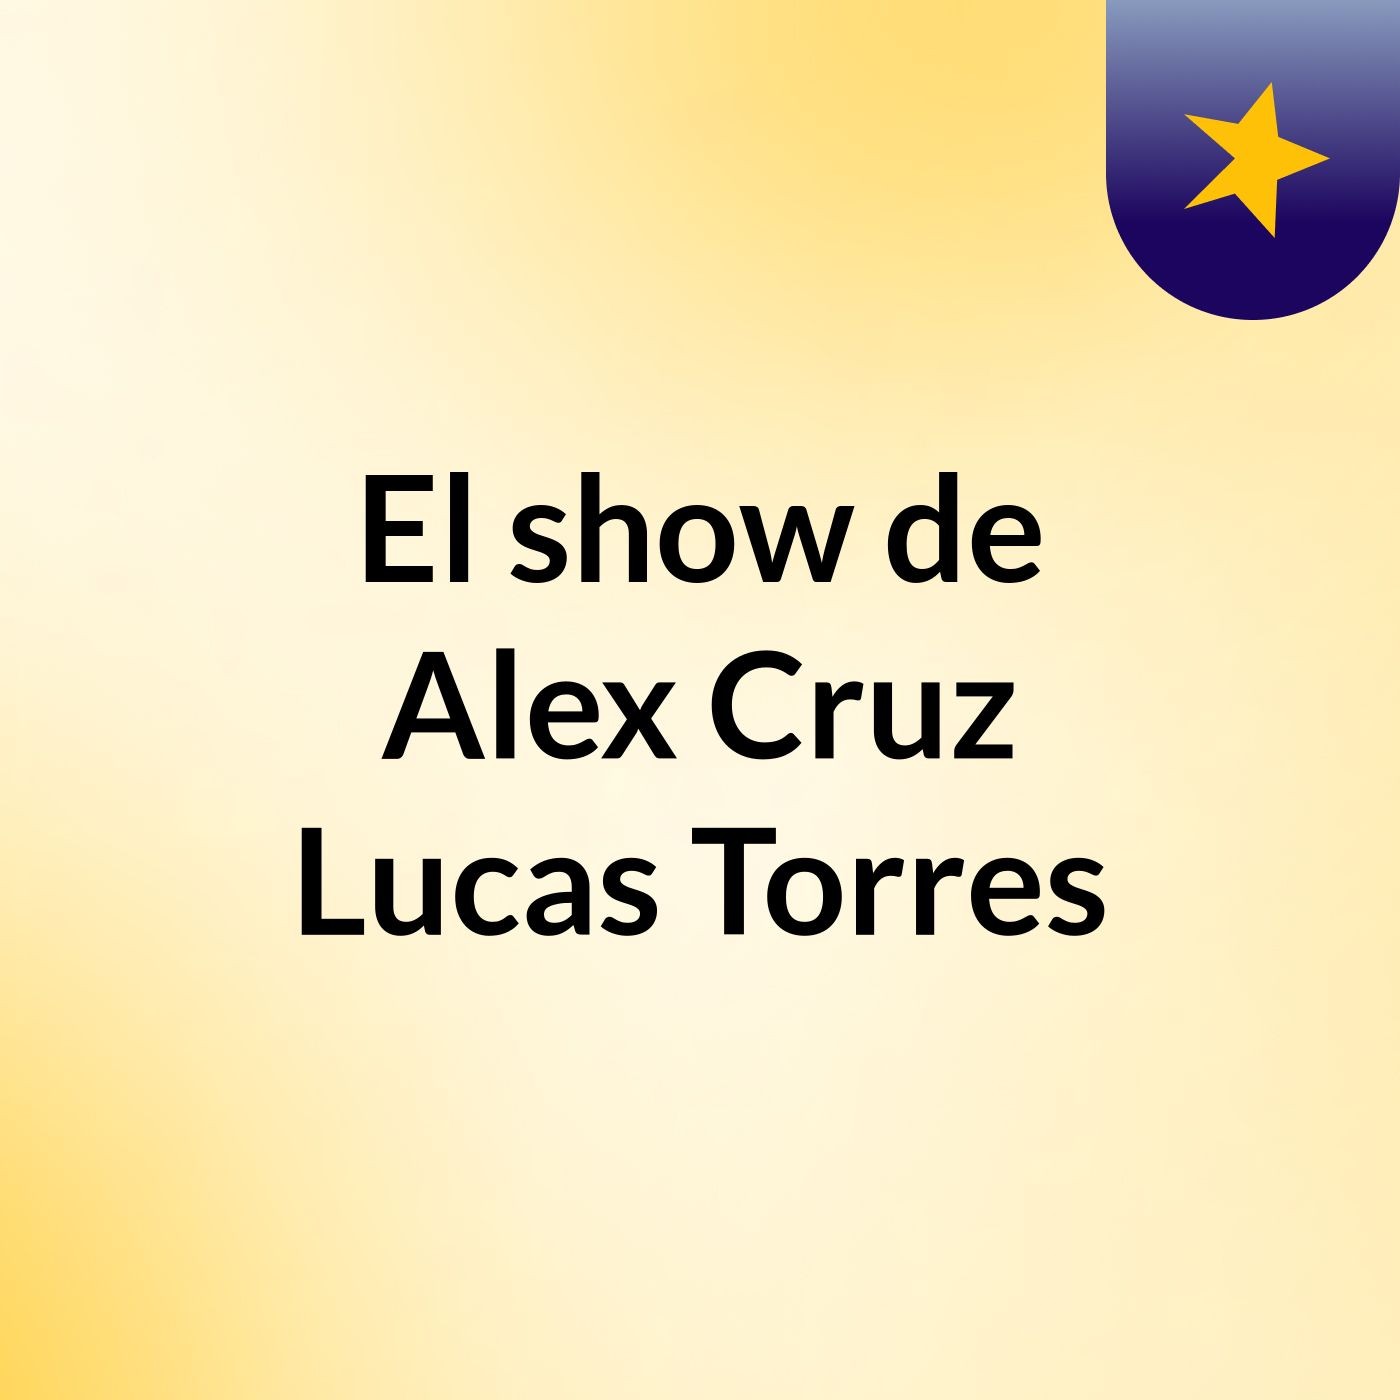 El show de Alex Cruz Lucas Torres